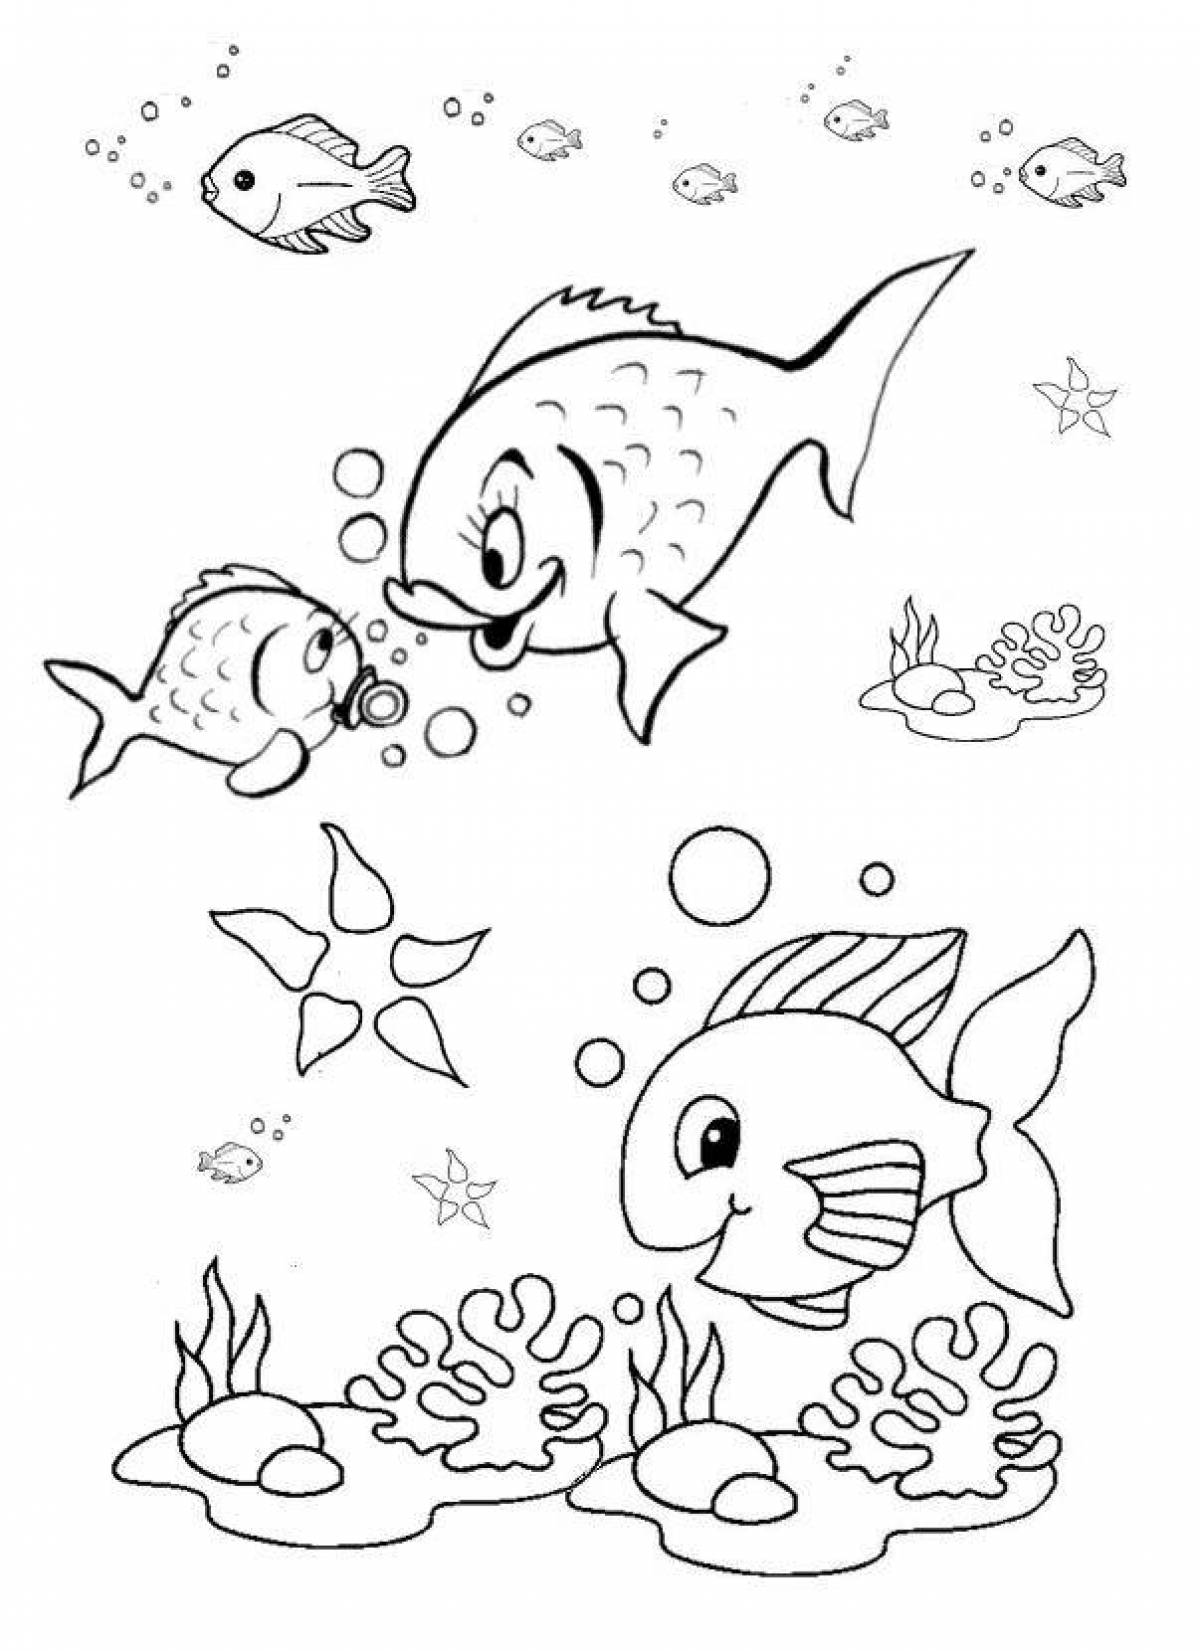 Юмористическая рыбка-раскраска для детей 6-7 лет